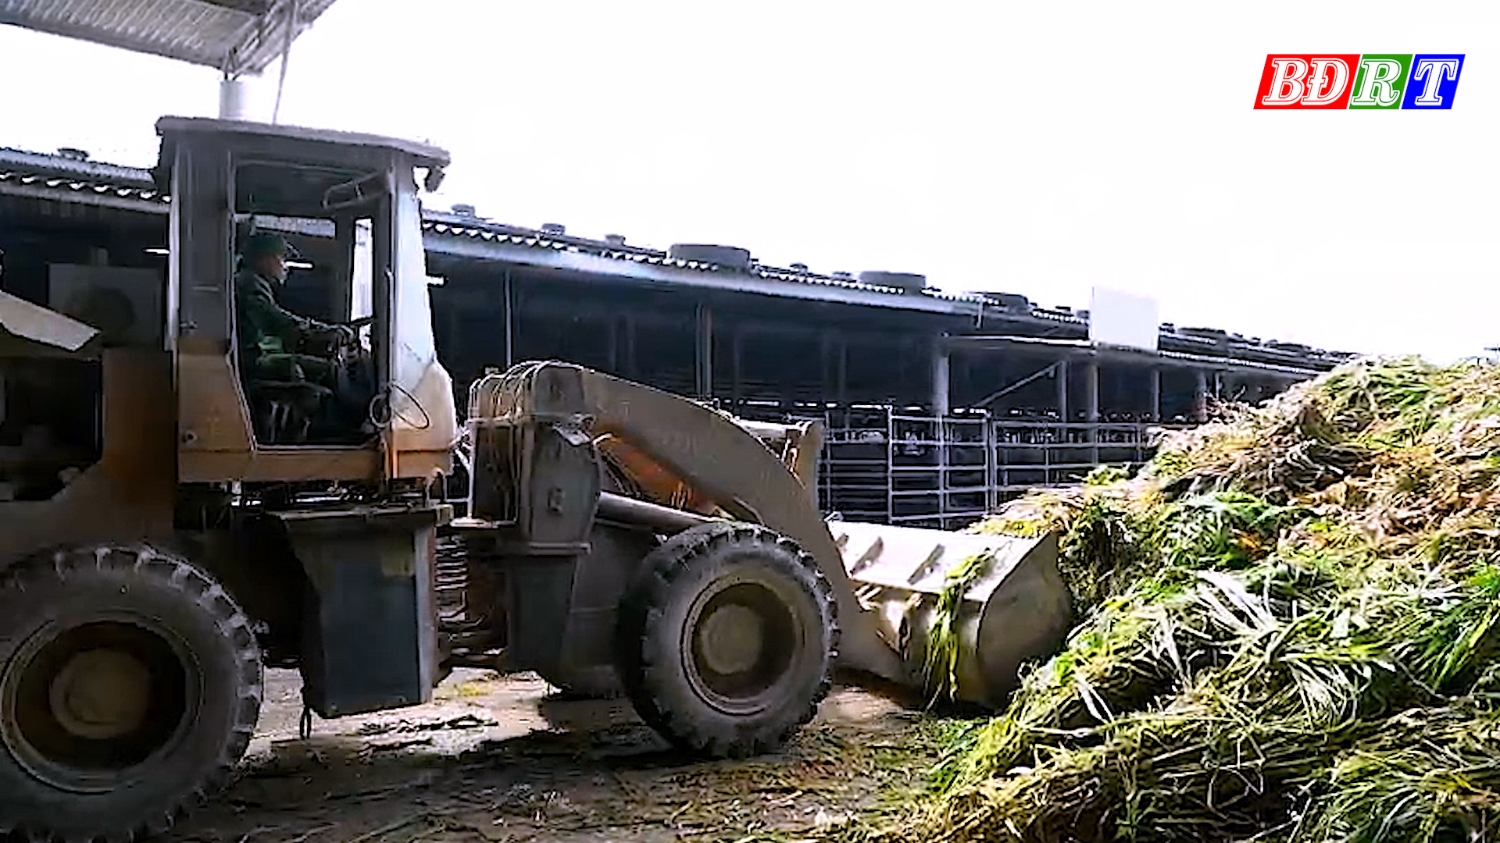 Công ty TNHH Đoàn kết Phú Qúy nuôi trâu, bò bằng phương pháp hữu cơ, sử dụng rơm rạ, cỏ, vỏ lạc, ngô… để chăn nuôi